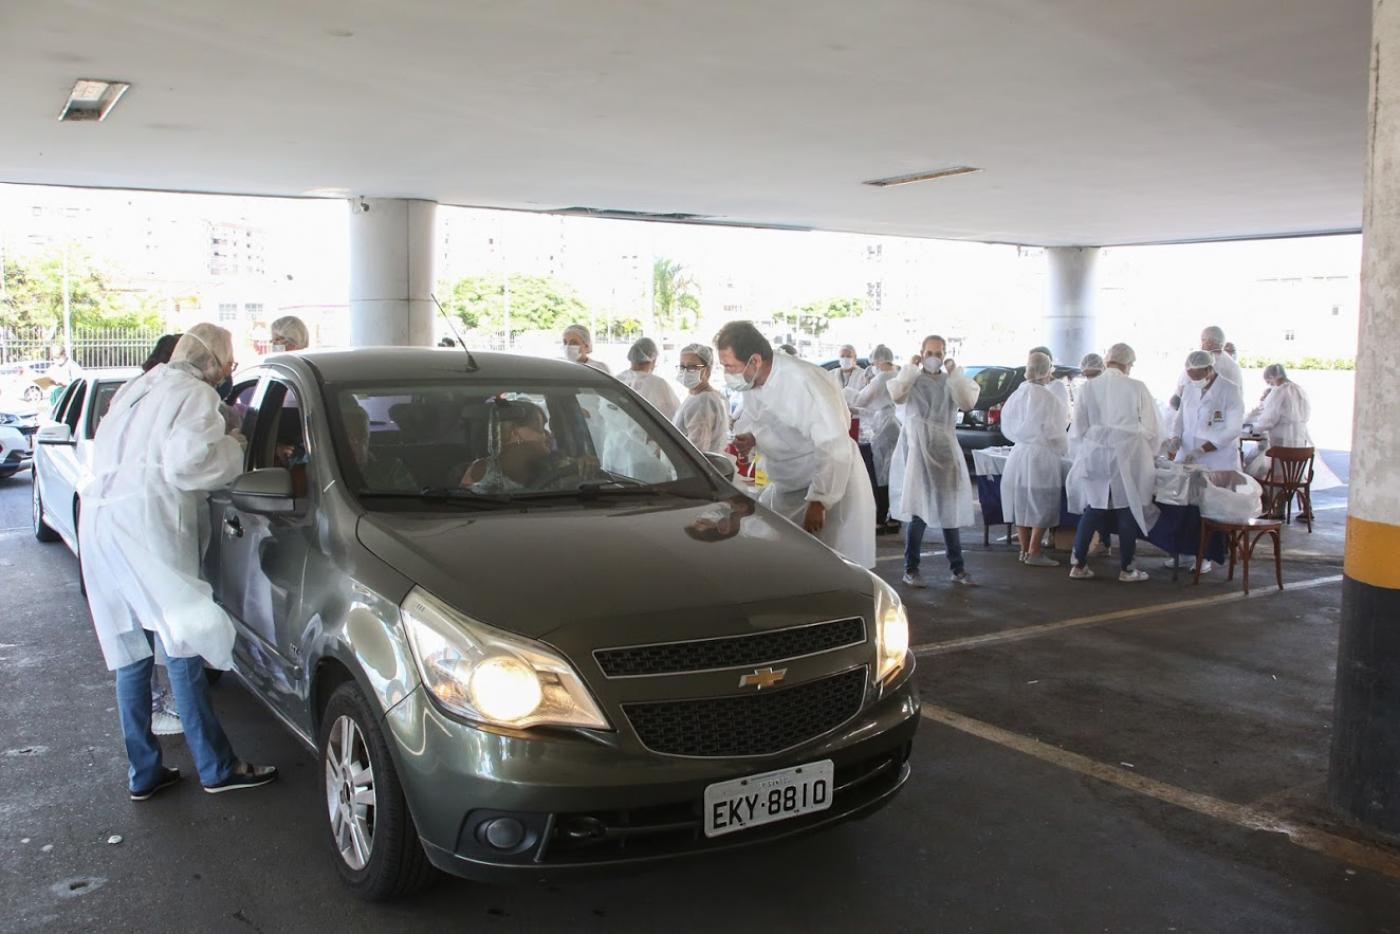 Veículo está parado em estacionamento. Pessoas vestidas aventais brancos, máscaras e luvas estão em volta. #Paratodosverem